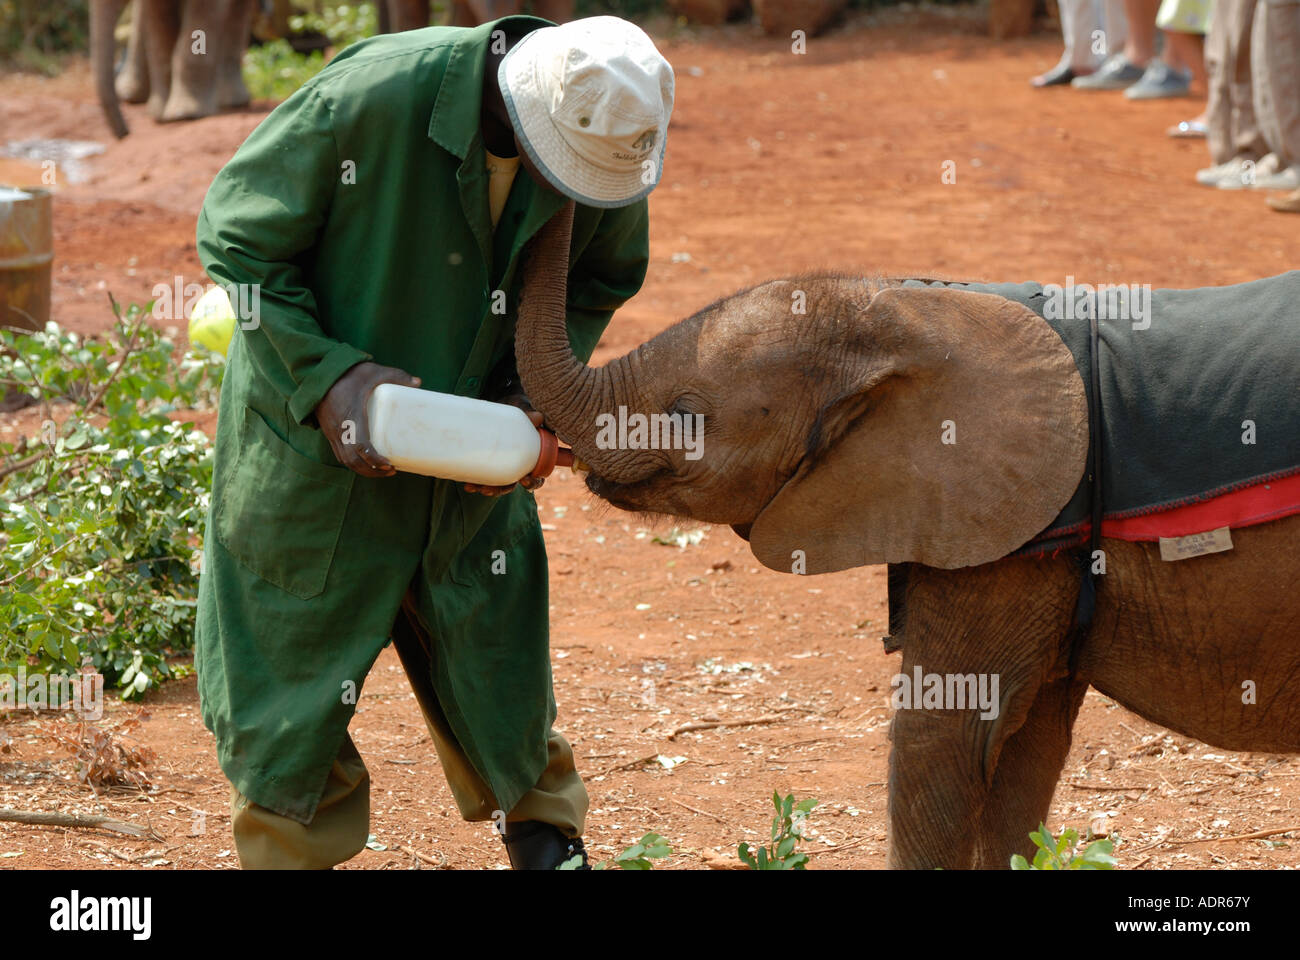 Un jeune veau éléphant bouteille d'être nourris avec du lait à l'Orphelinat de David Sheldrick près de Parc National de Nairobi Kenya Banque D'Images